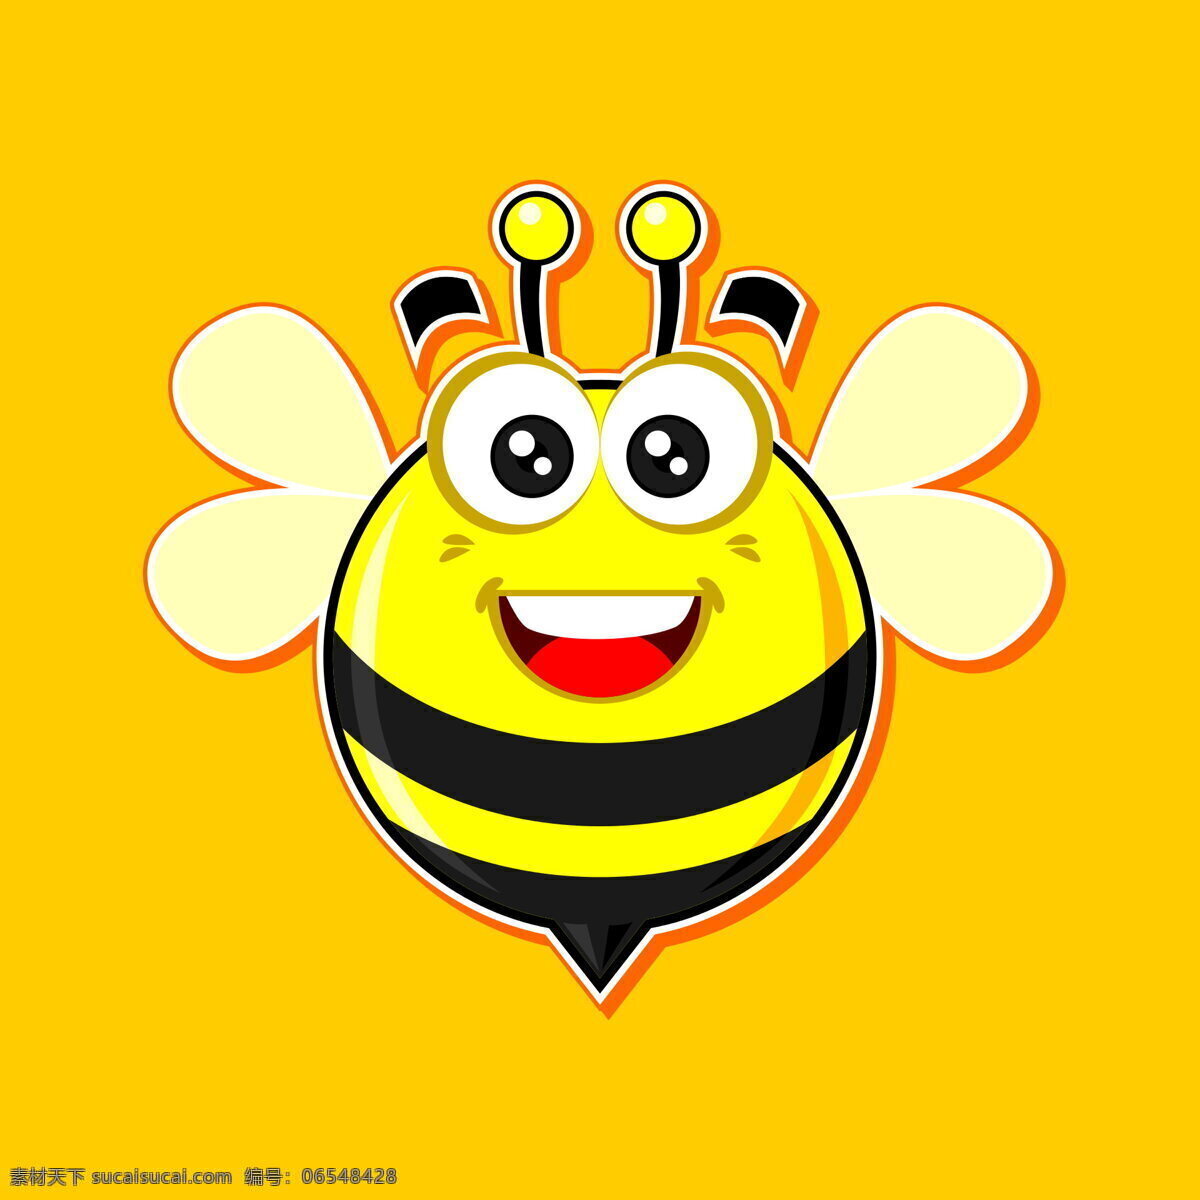 卡通 蜜蜂 黄色 背景 卡通蜜蜂 q版蜜蜂 q版 黄色蜜蜂 黄色背景 卡通素材 卡通画 卡通动漫 动漫动画